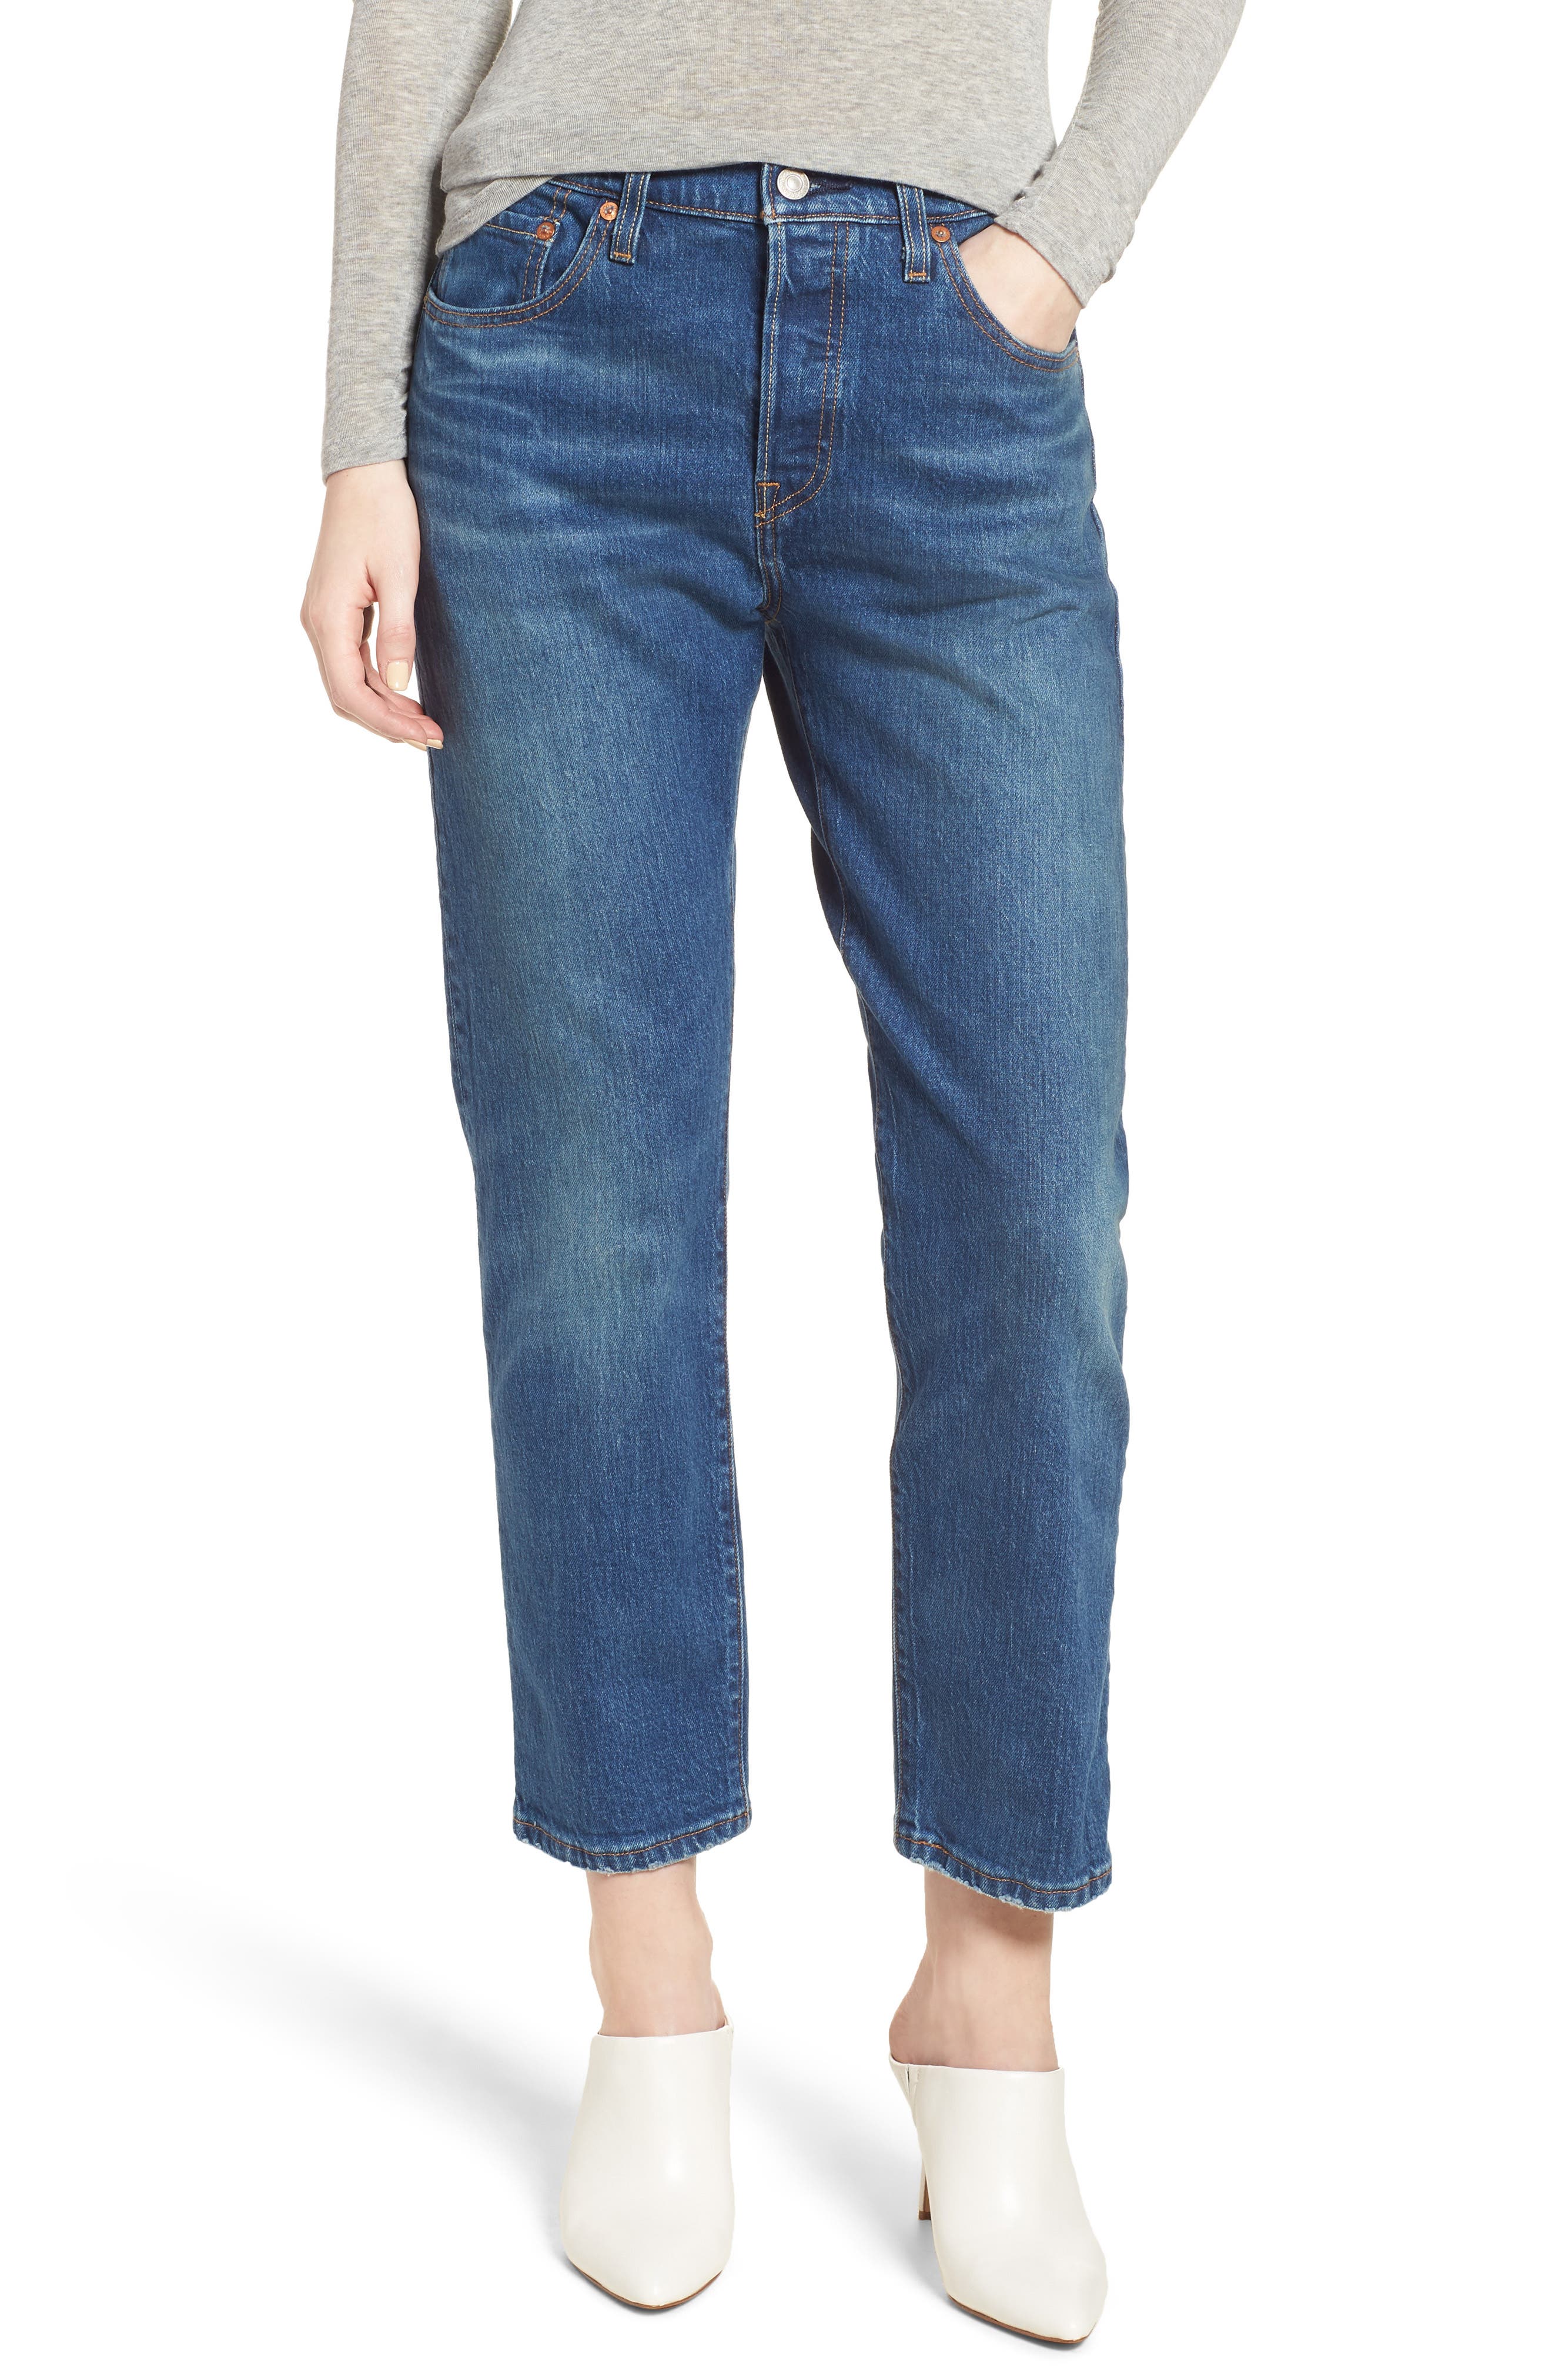 levis 501 crop jeans